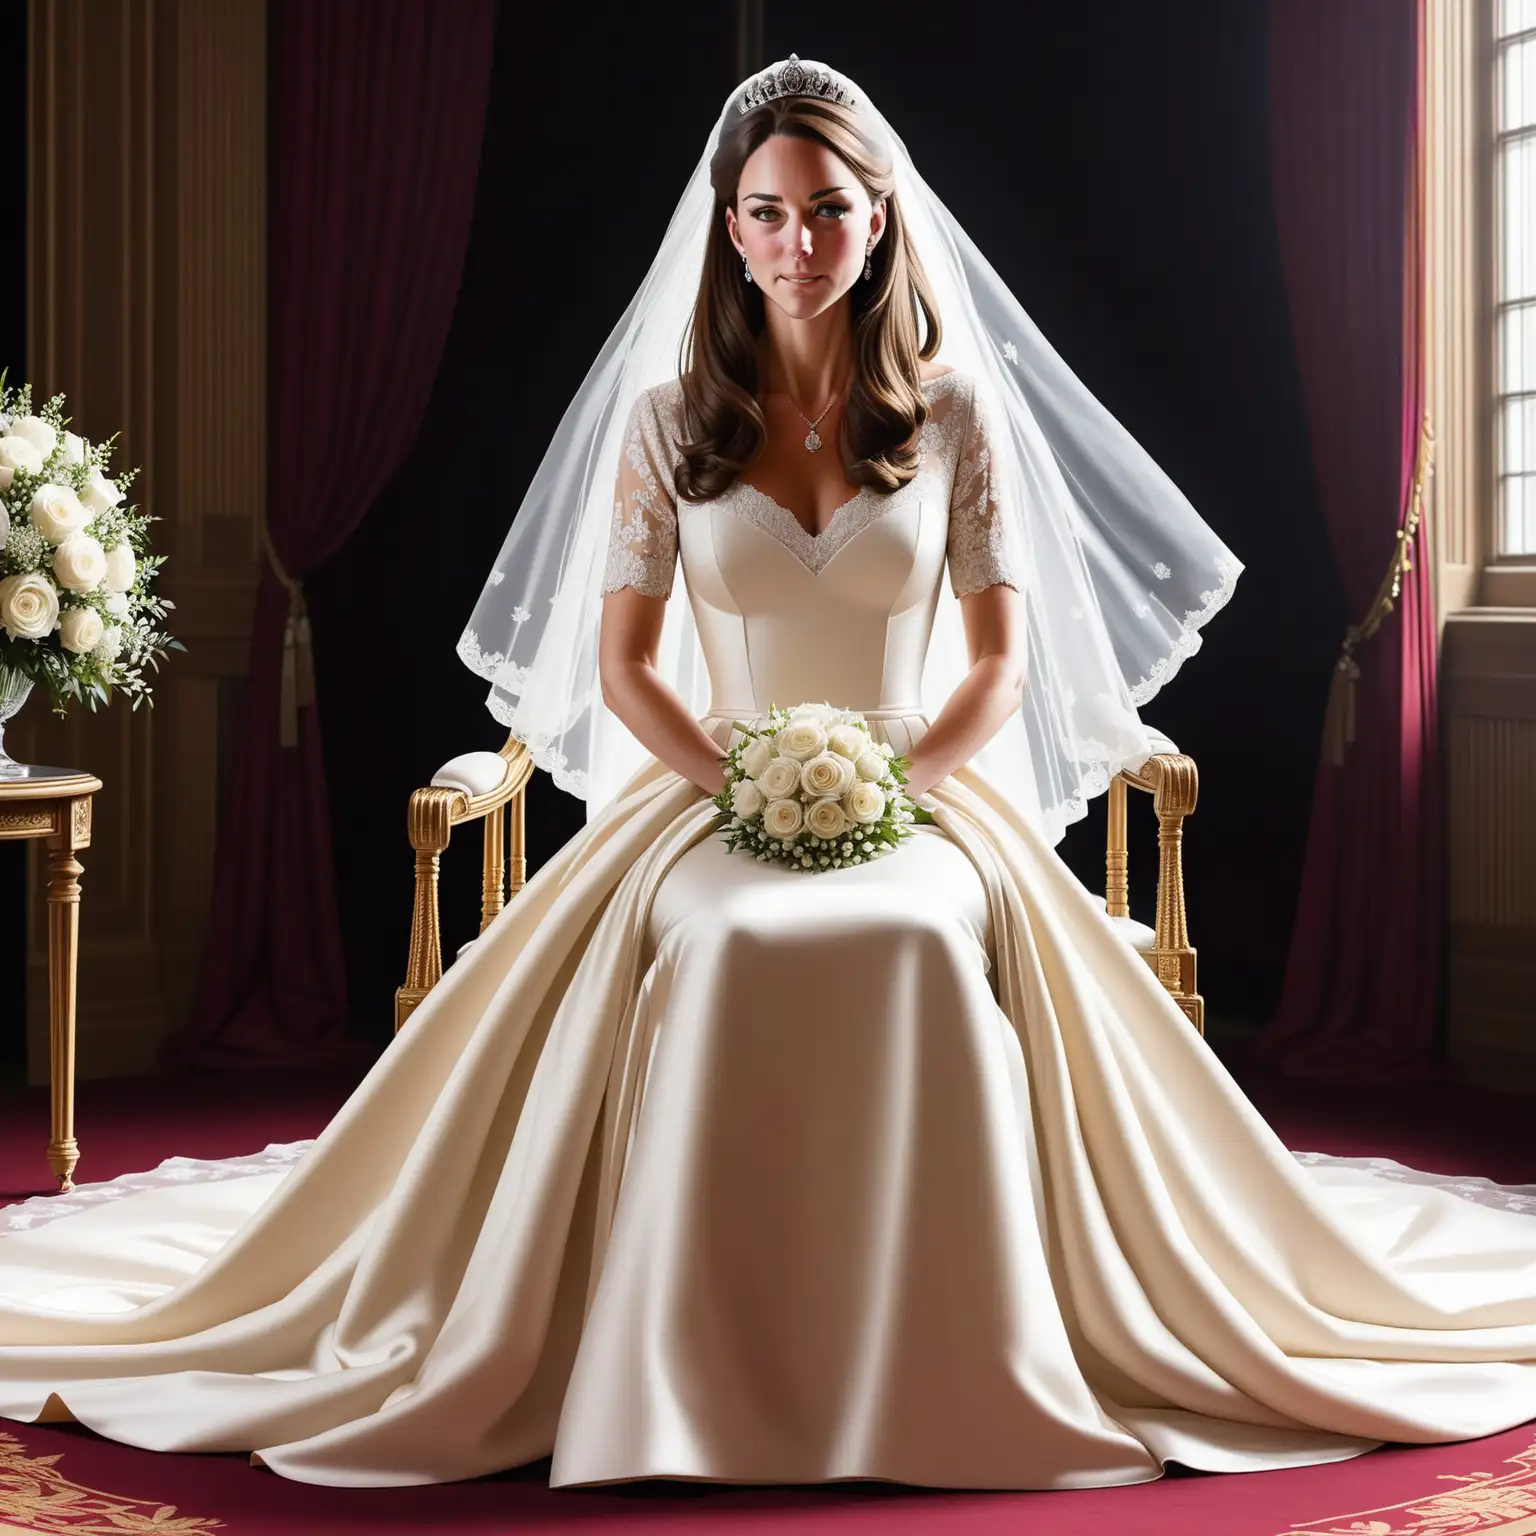 dans pièce sombre, pose d'hypnose, Kate Middleton, magnifique robe très luxueuse de mariée très luxueuse ivoire en satin duchesse manches courte amples et escarpins blanc, assise sur un chaise se fait hypnotisé 